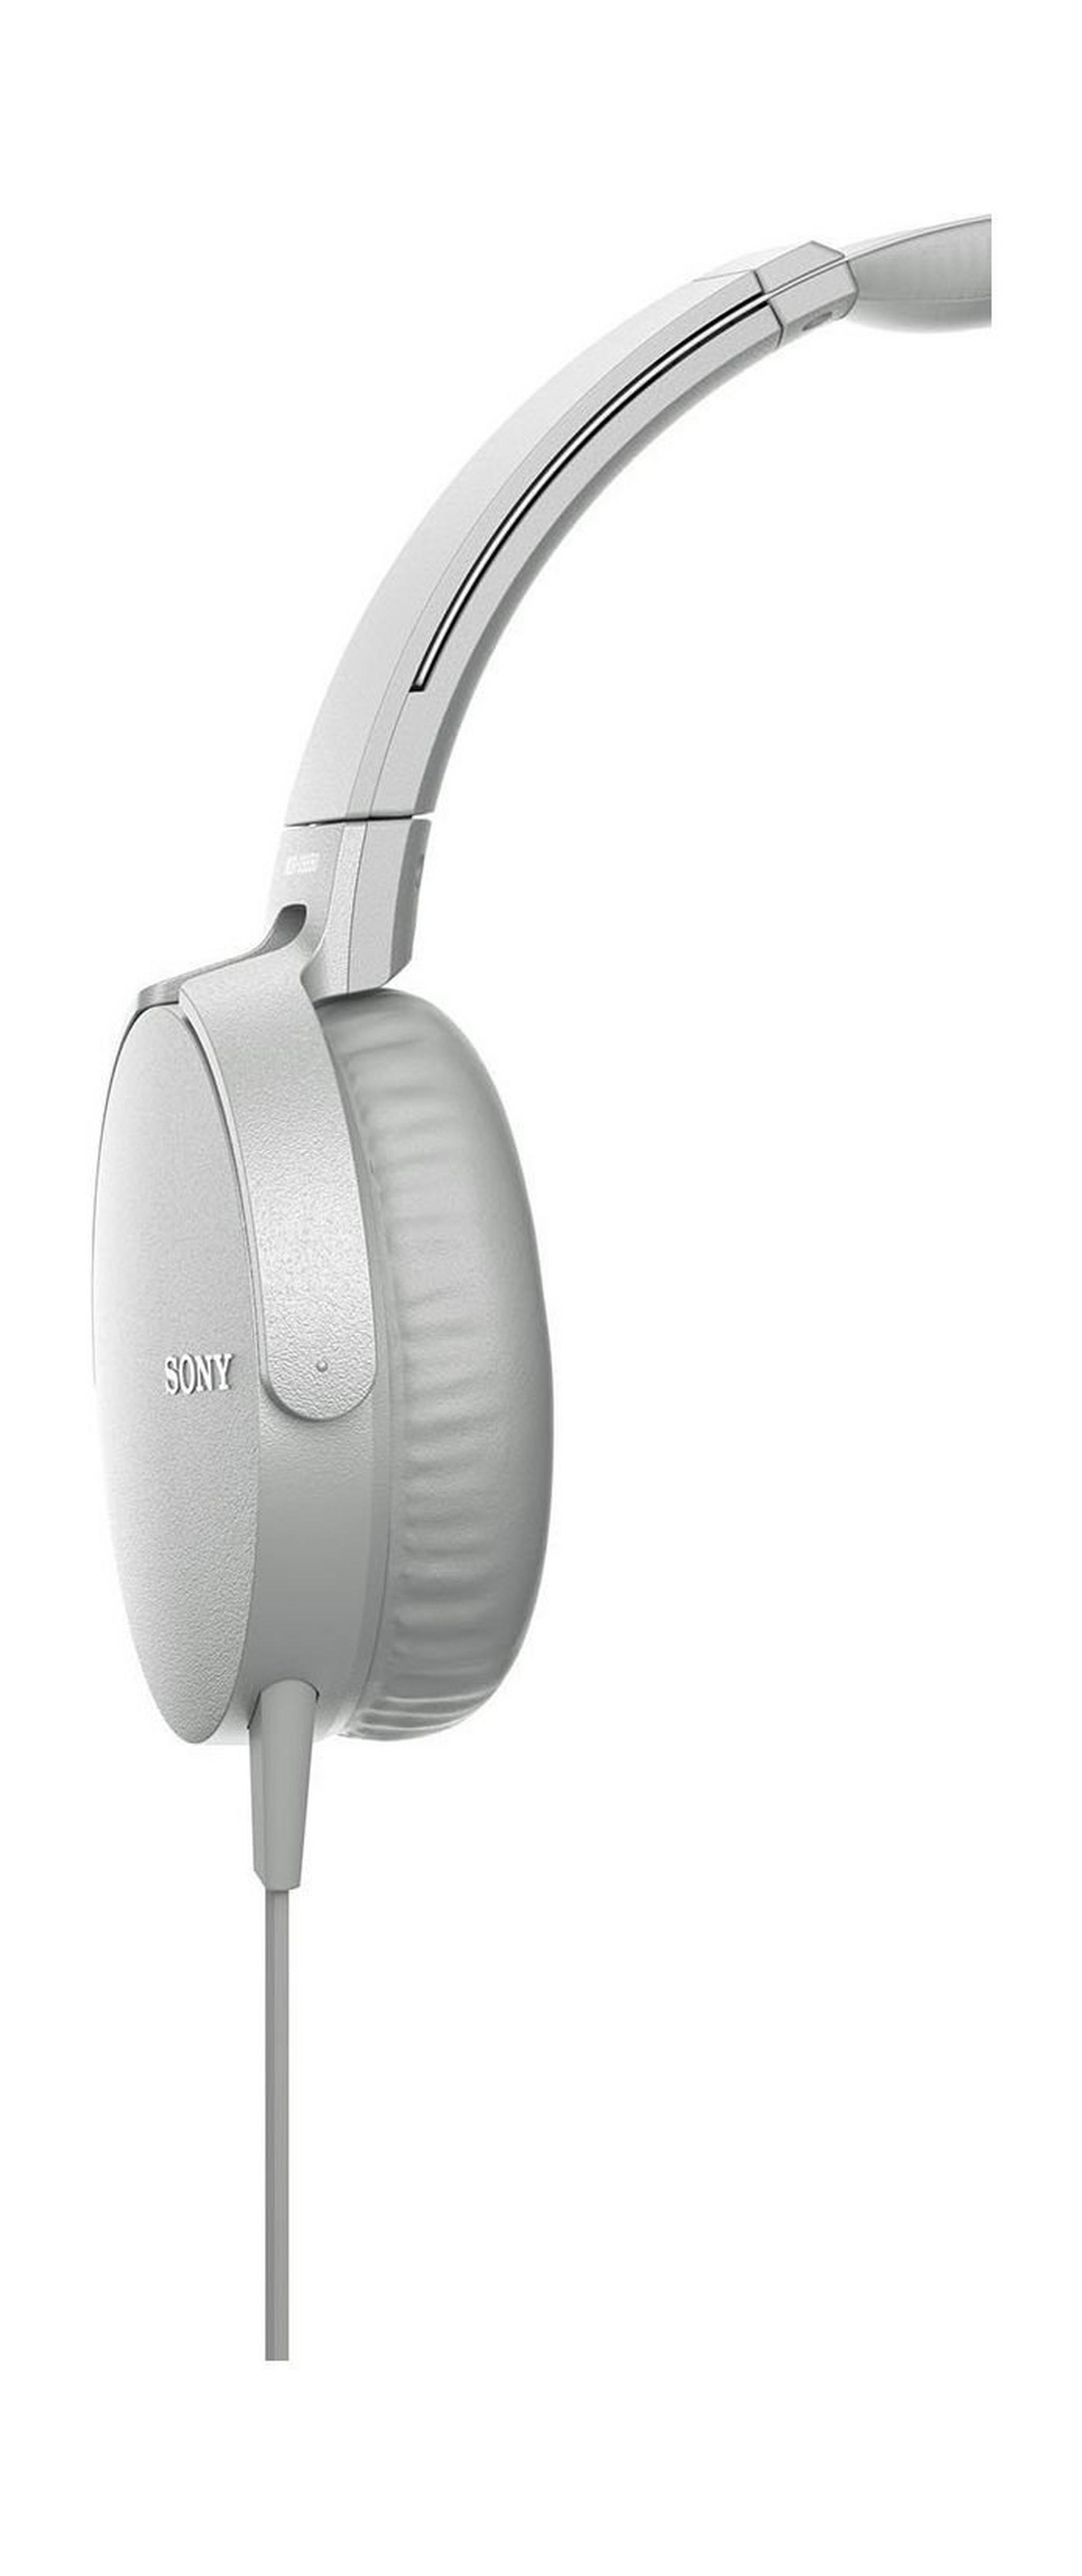 سماعة الرأس  سوني إكسترا للصوت القوي والضخم - أبيض (MDR-XB550AP)